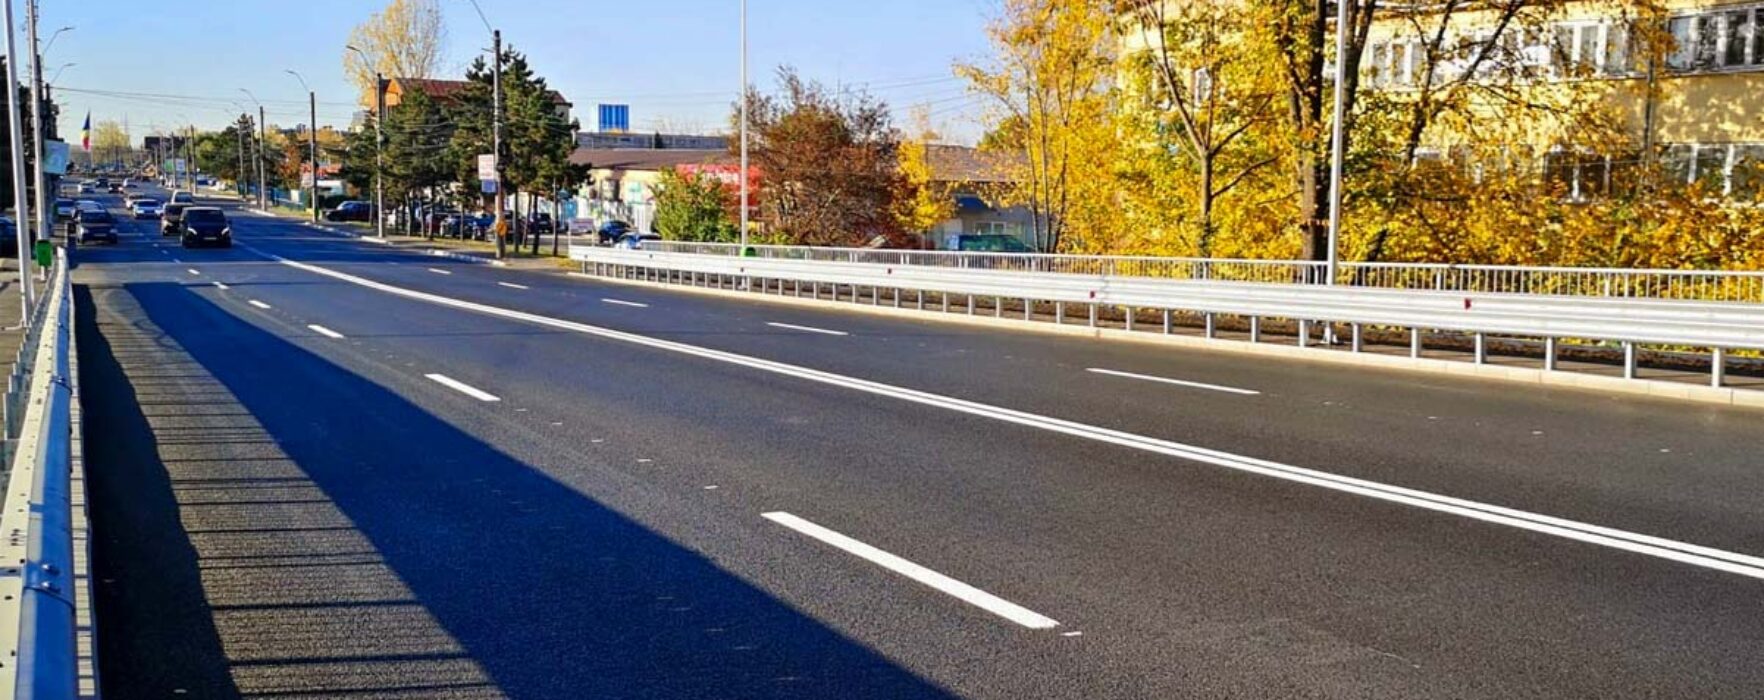 Târgovişte: Pasajul de la podul de la combinat, redat circulaţiei, după lucrări de modernizare